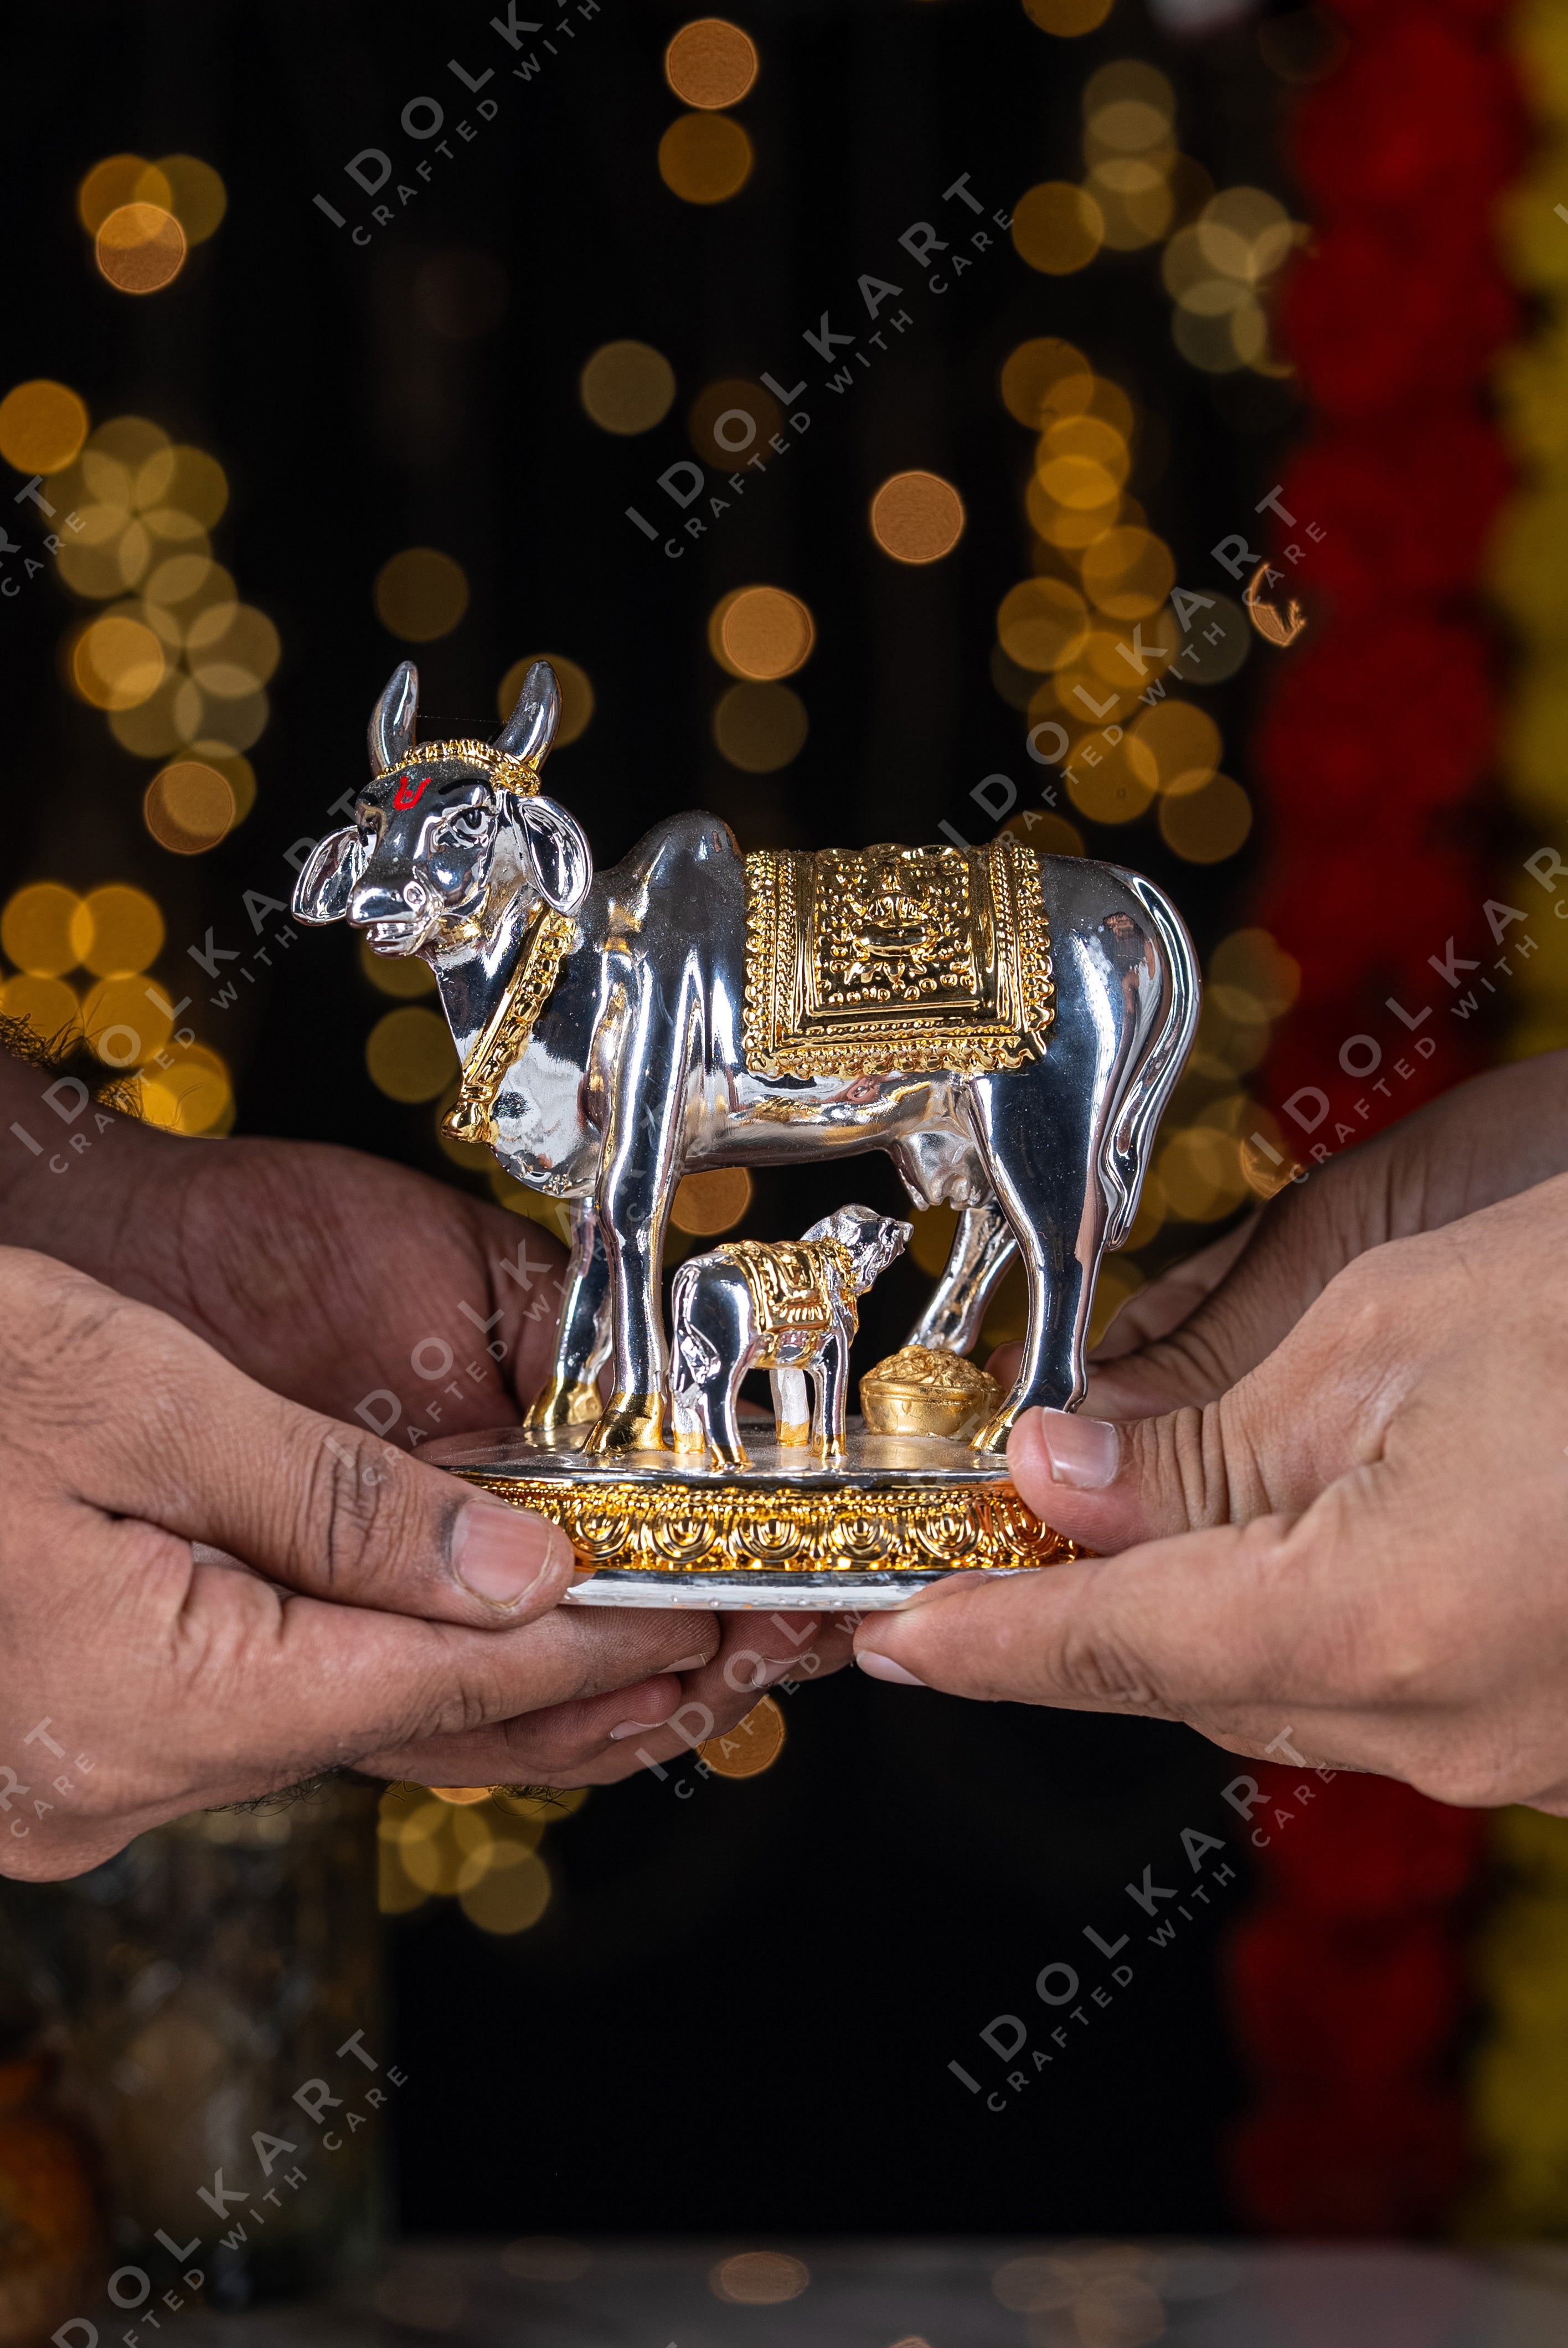 Kamadhenu idol in hand